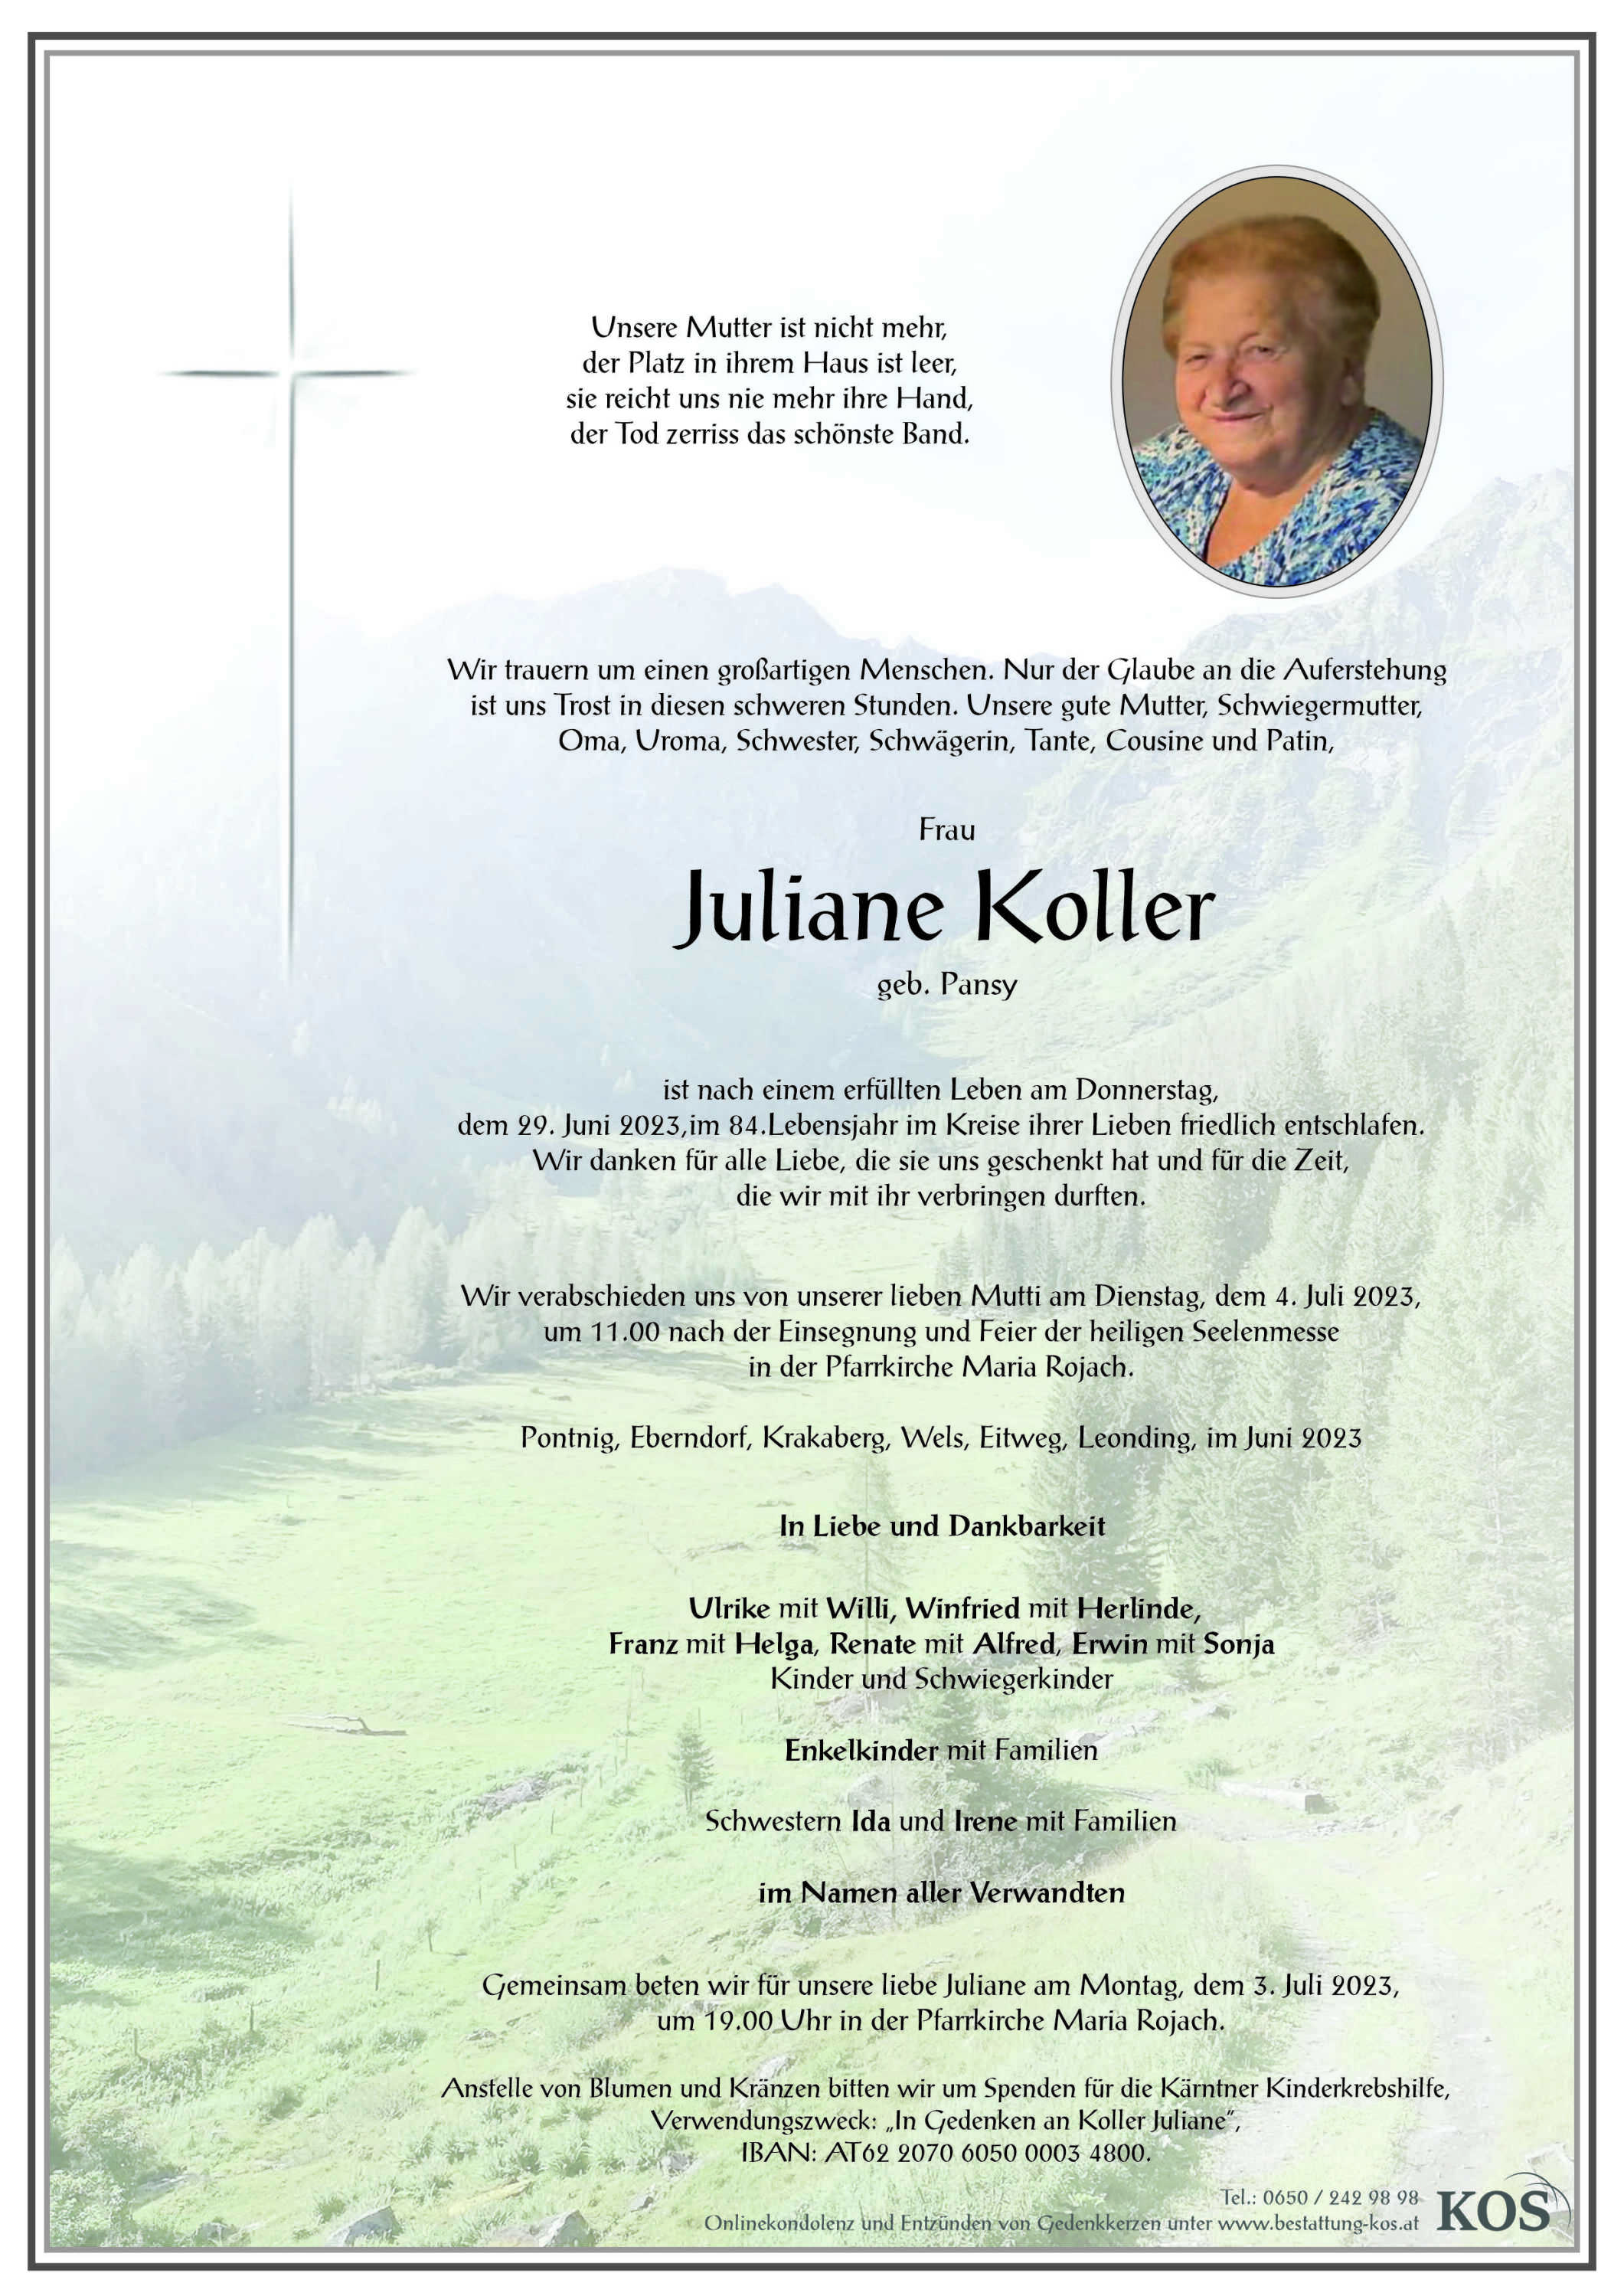 Juliane Koller